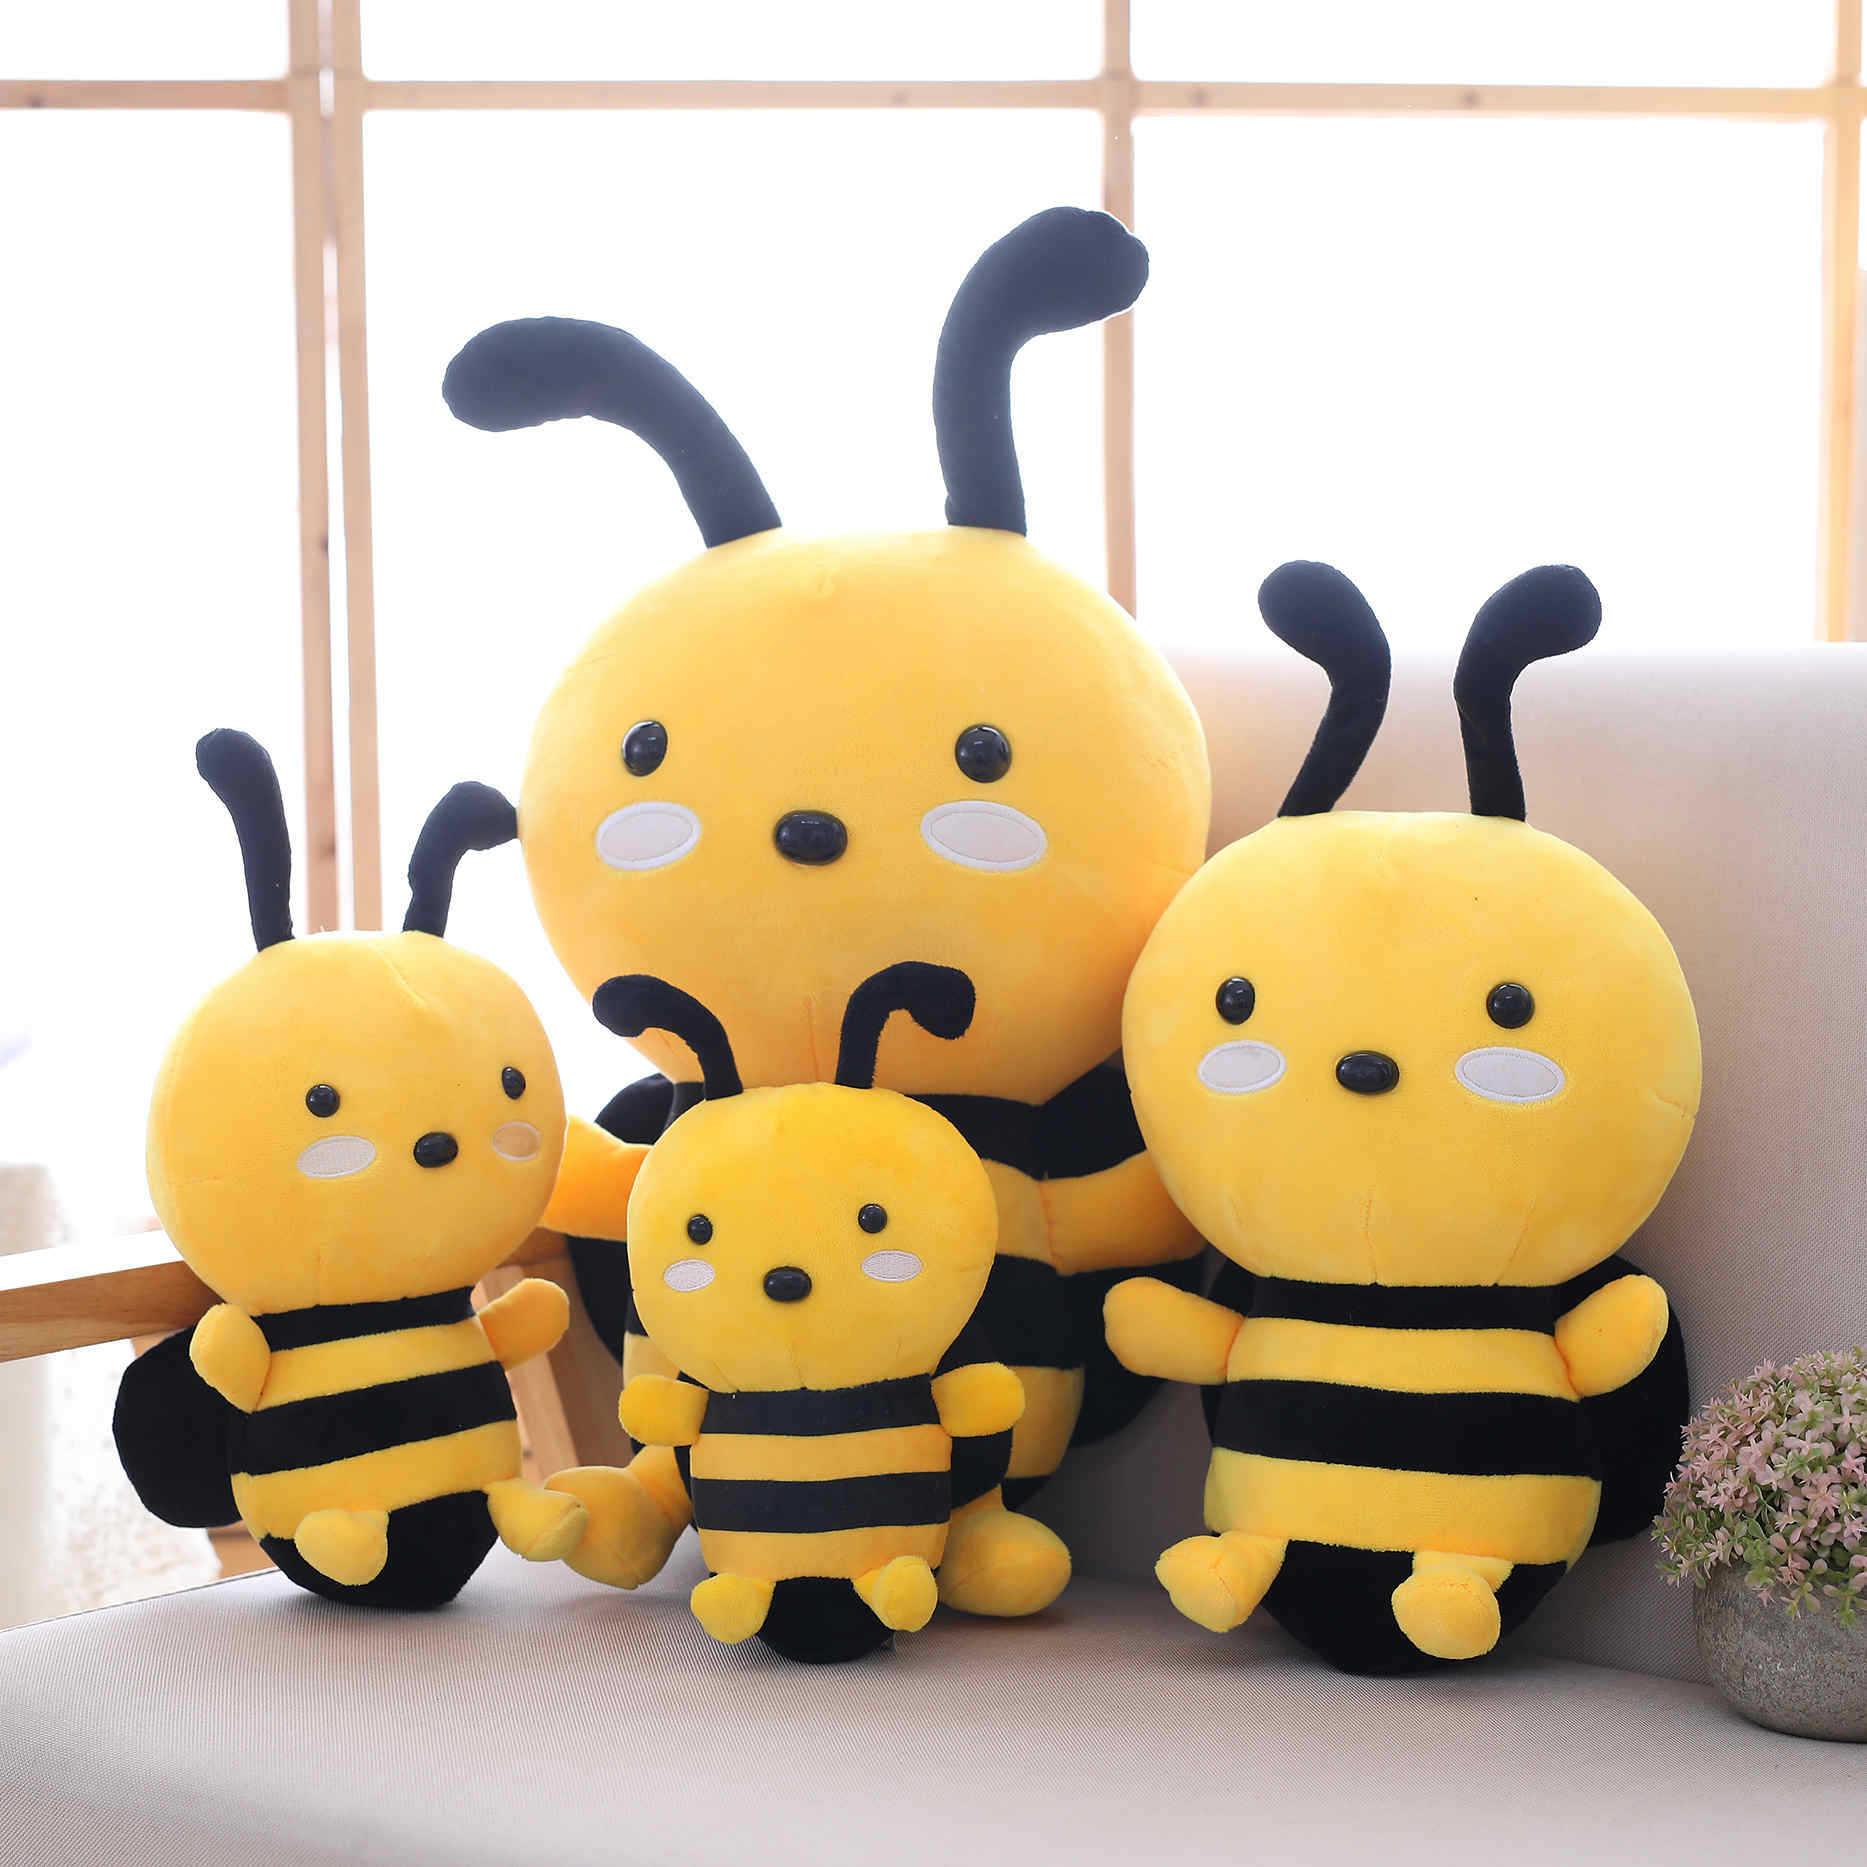 Nette Biene mit Flügeln Plüschtier Tier Puppe Kind Baby Geburtstag Home Decoration Geschenk 20/30 cm